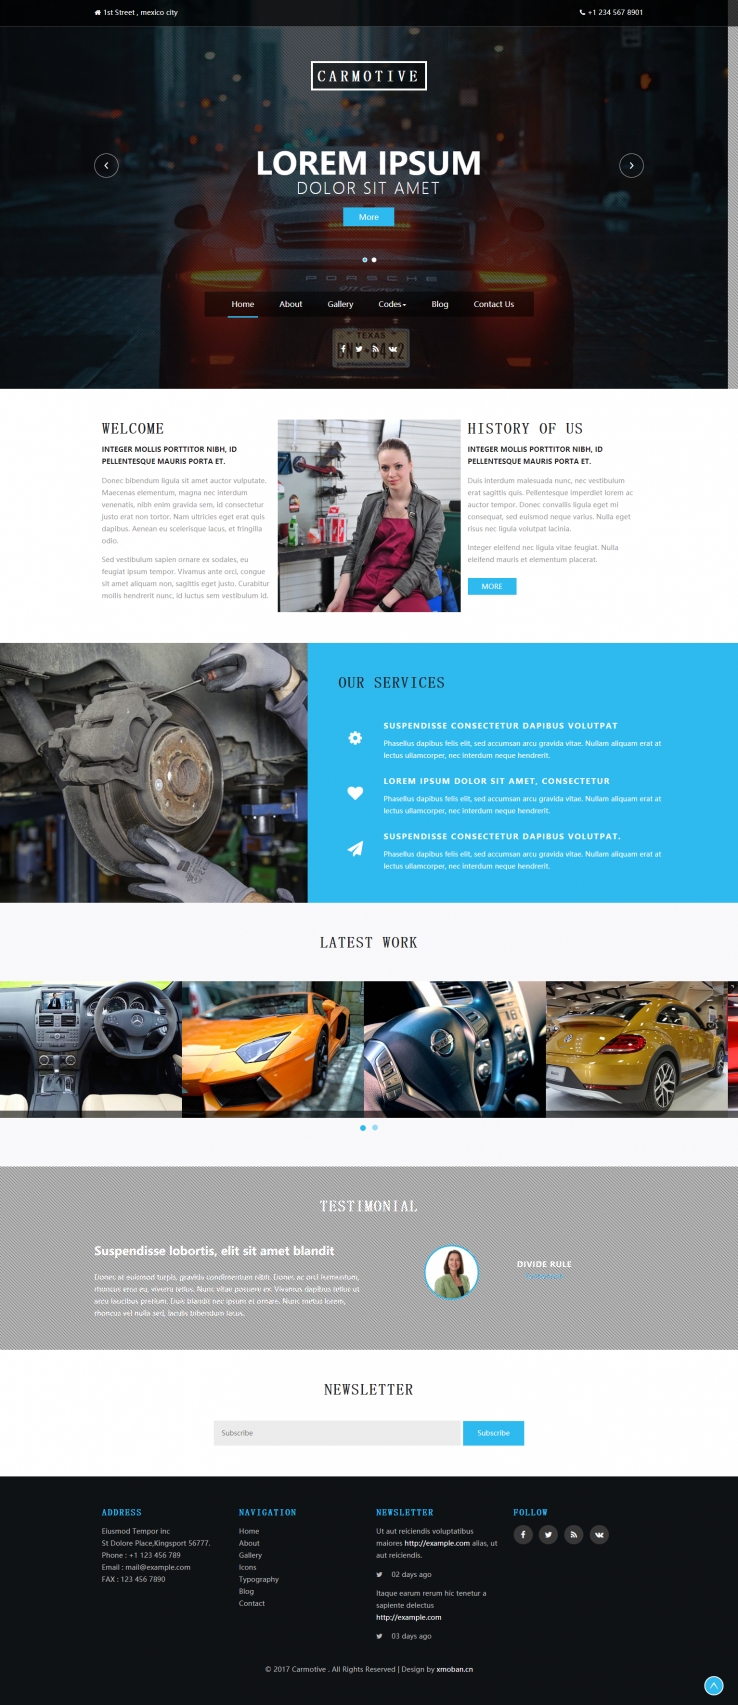 蓝色简洁风格的高端汽车保养企业网站源码下载